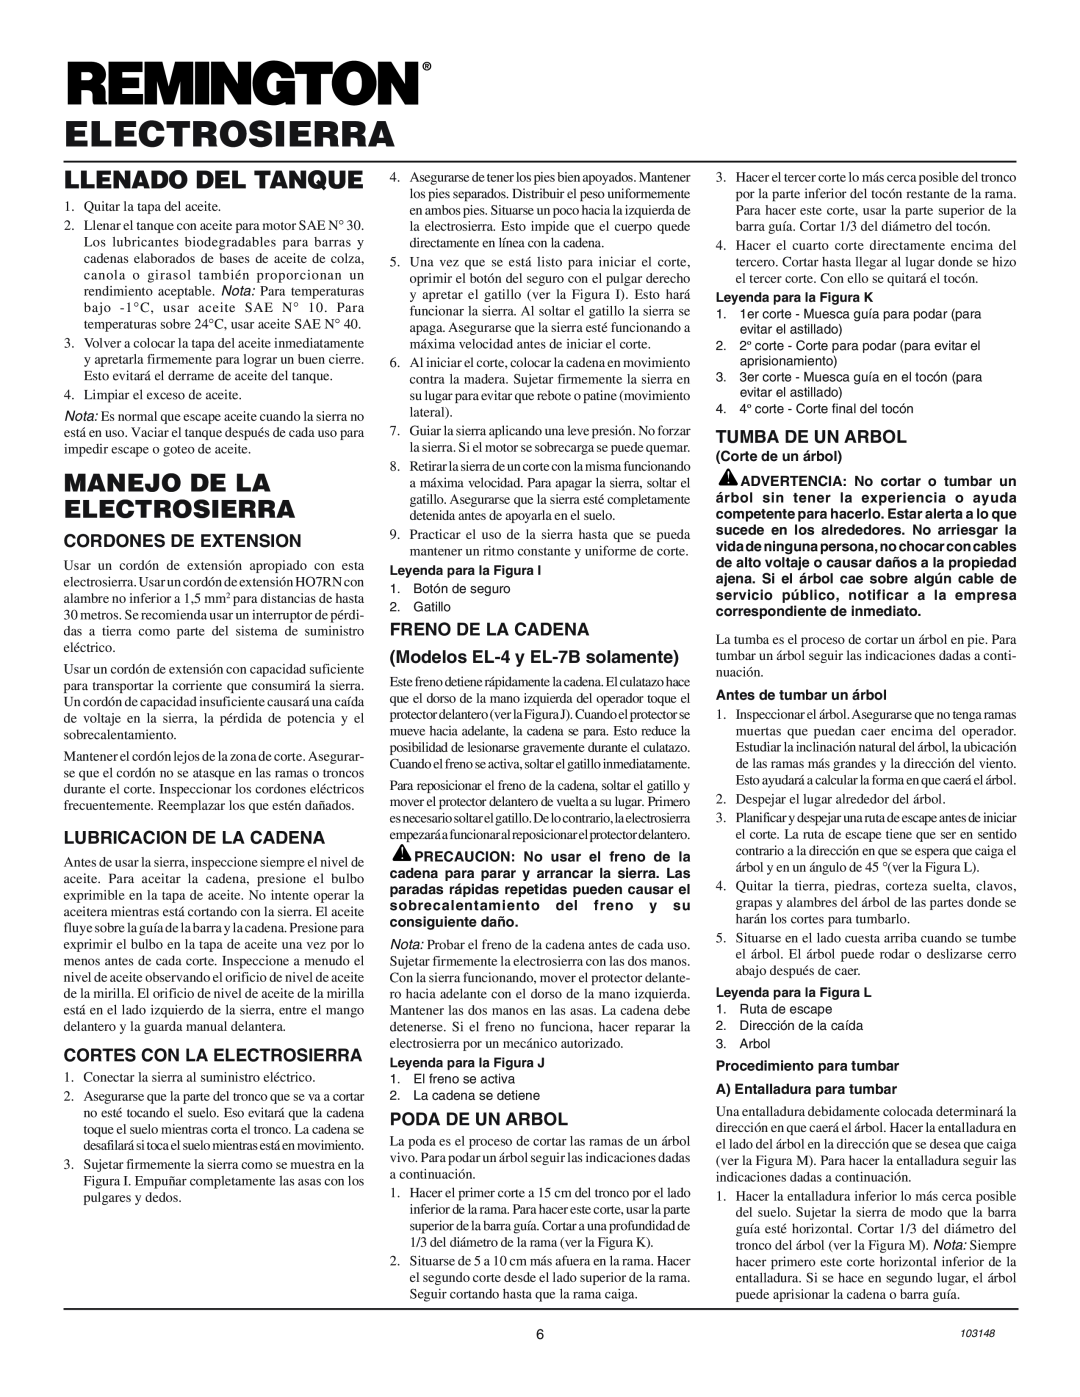 Remington Power Tools LNT-2, EL-4, EL-7B, EL-3, EL-7 Llenado Del Tanque, Manejo De La Electrosierra, Cordones De Extension 